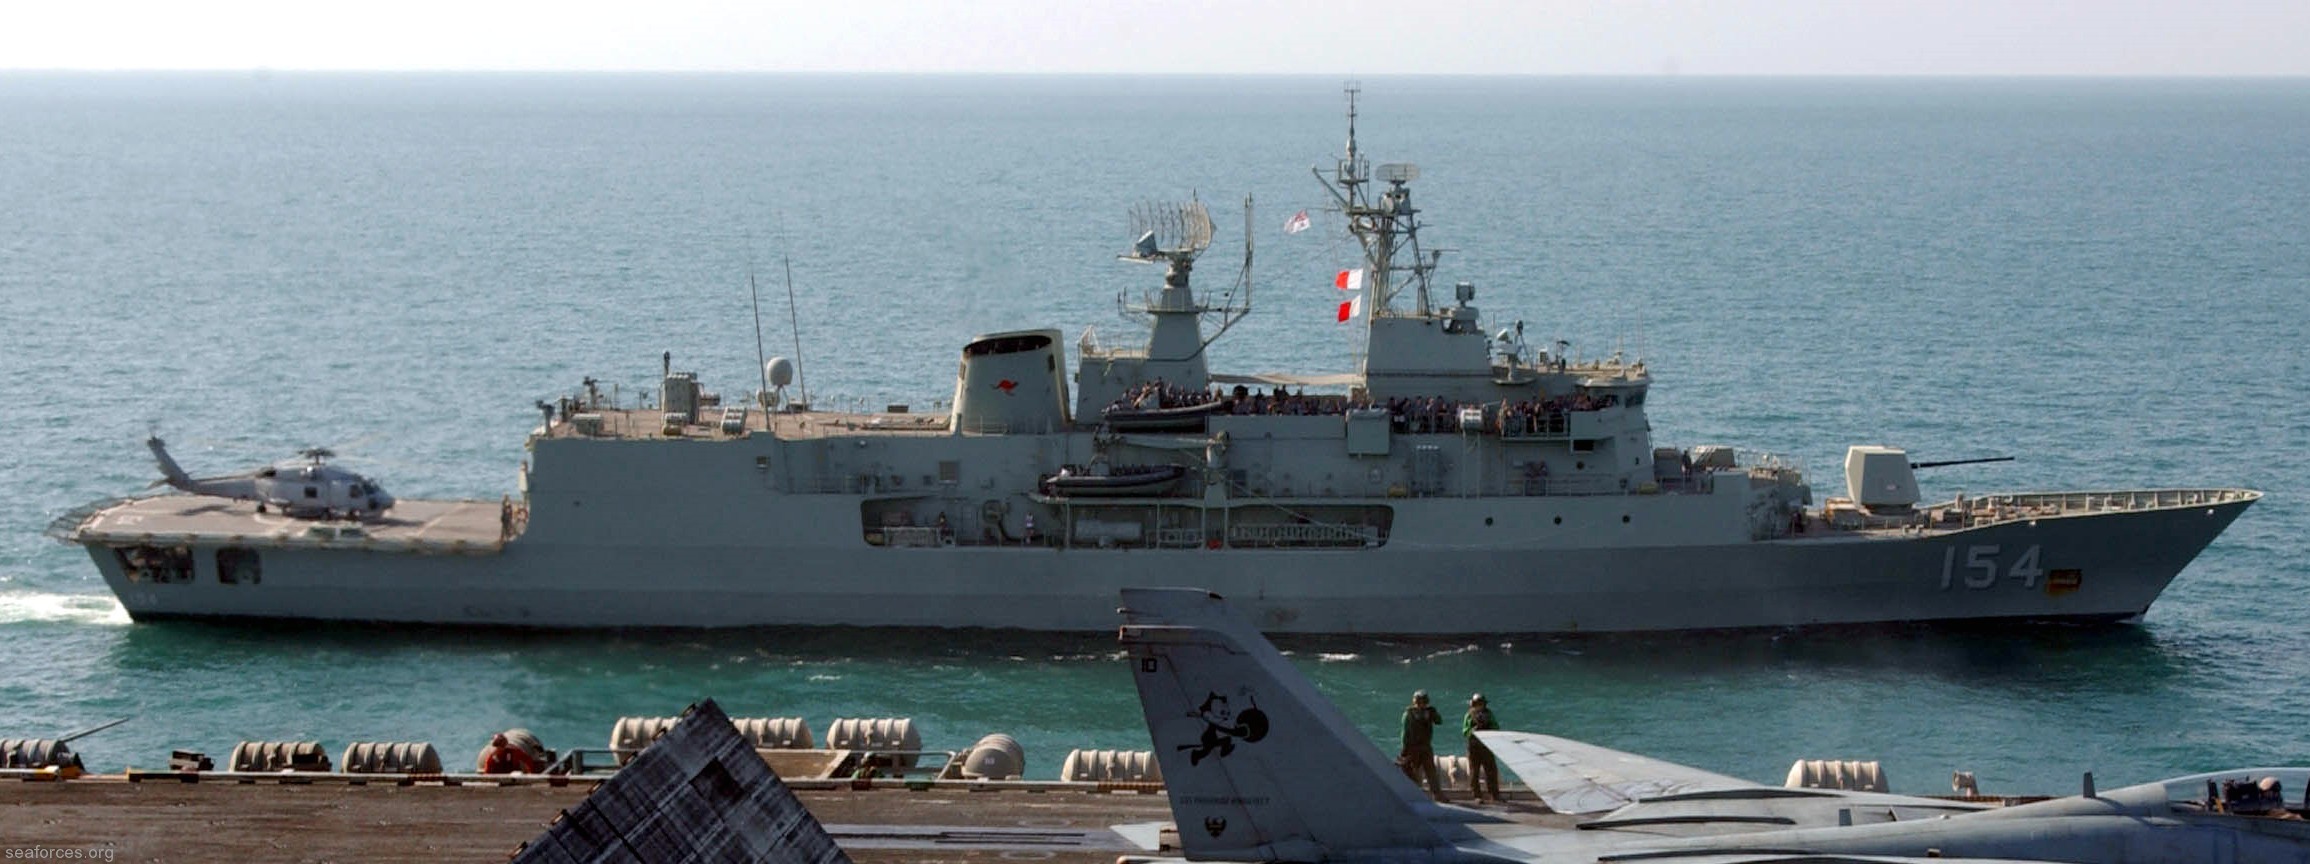 ffh-154 hmas parramatta anzac class frigate royal australian navy 2005 02 persian gulf